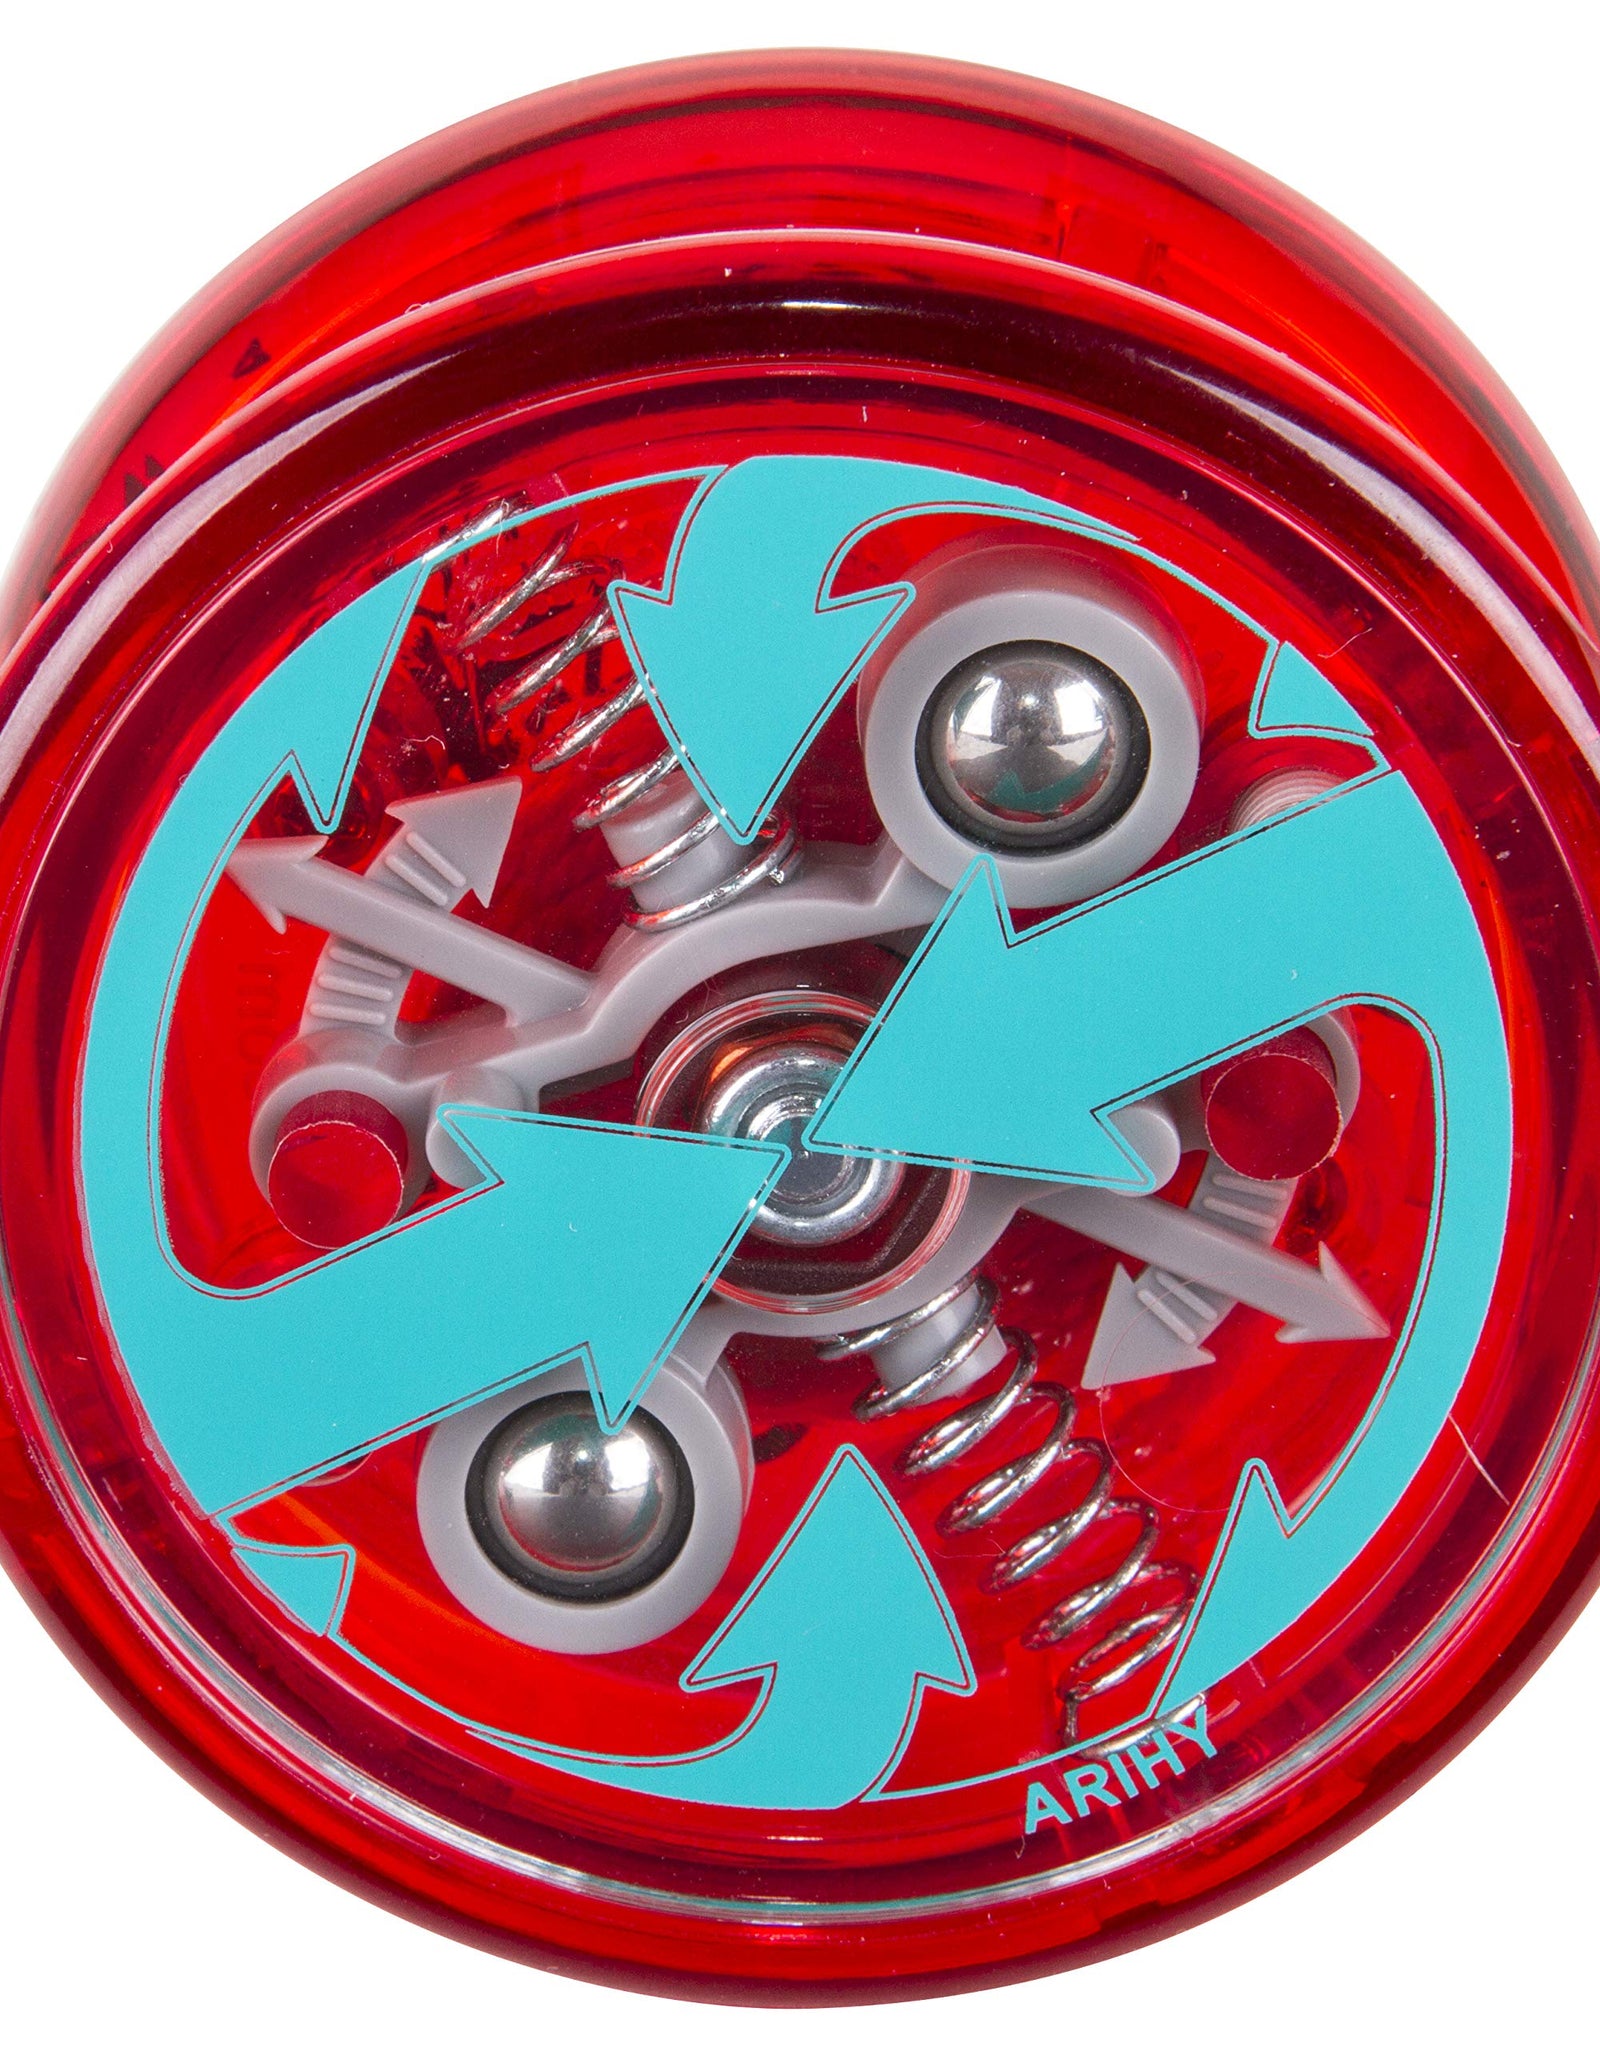 Duncan Toys Reflex Auto Return Yo-Yo, Beginner String Trick Yo-Yo, 1 Yo-Yo, Colors May Vary